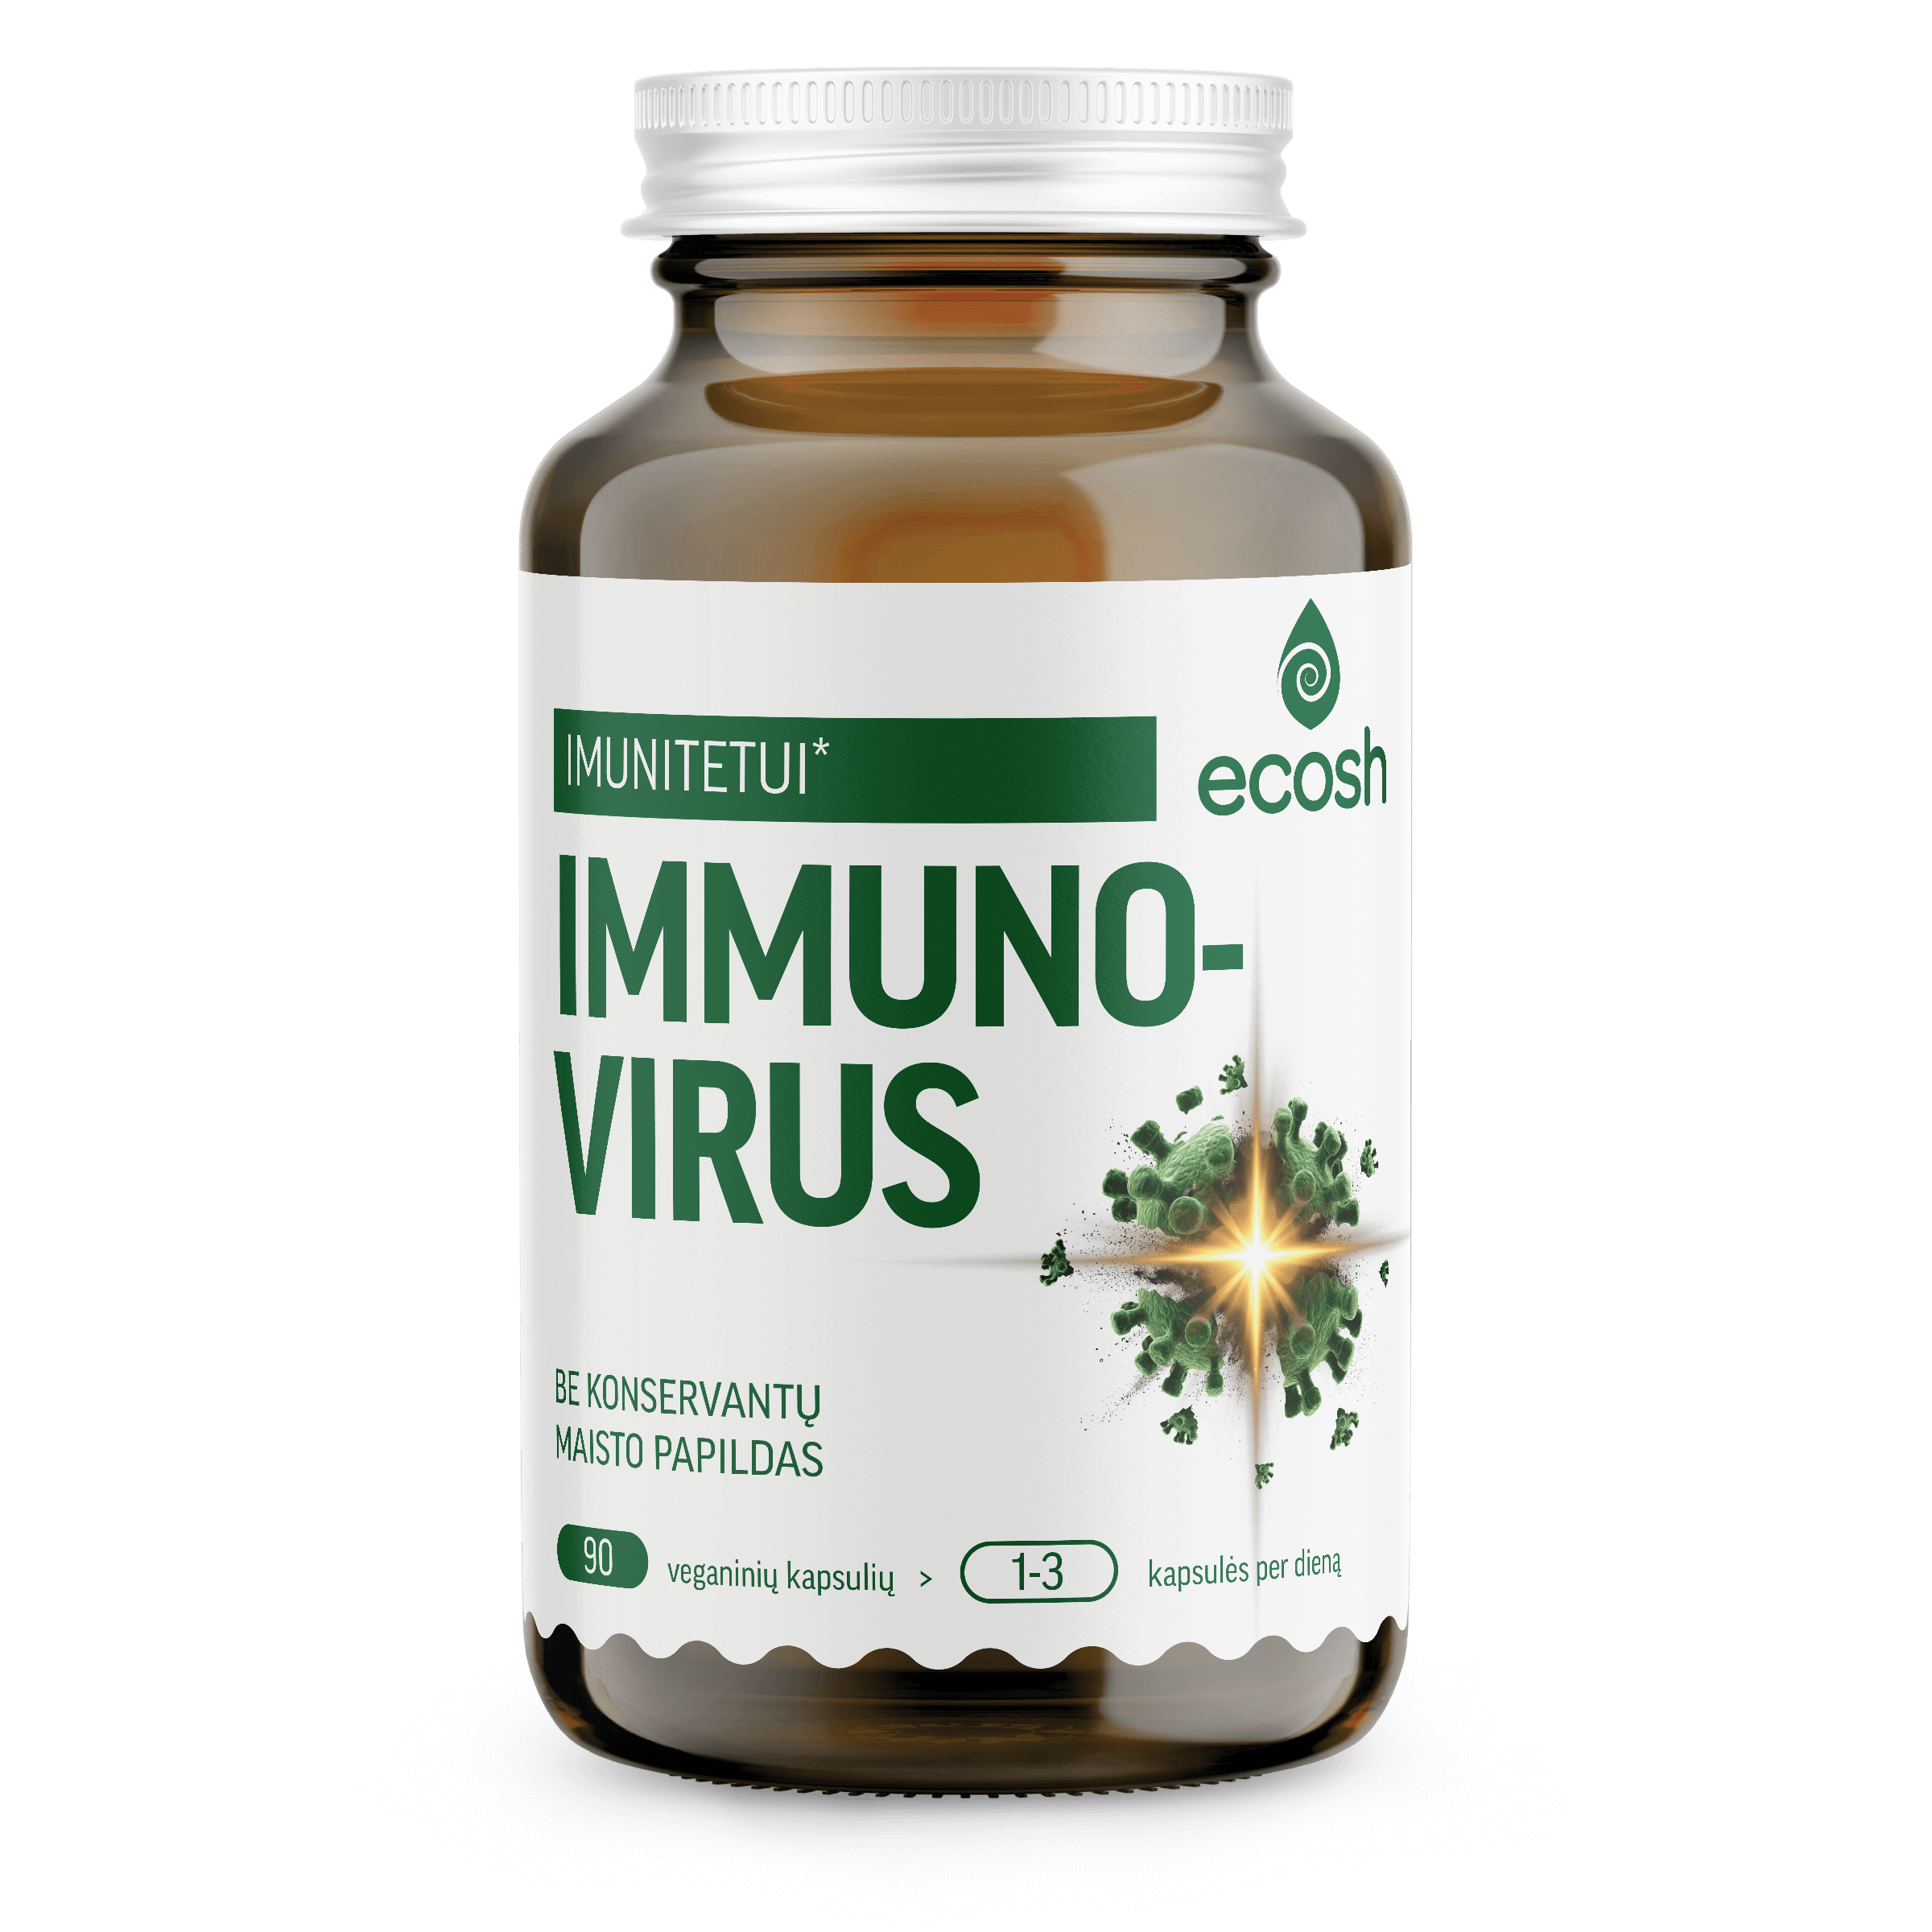 ECOSH immuno-virus